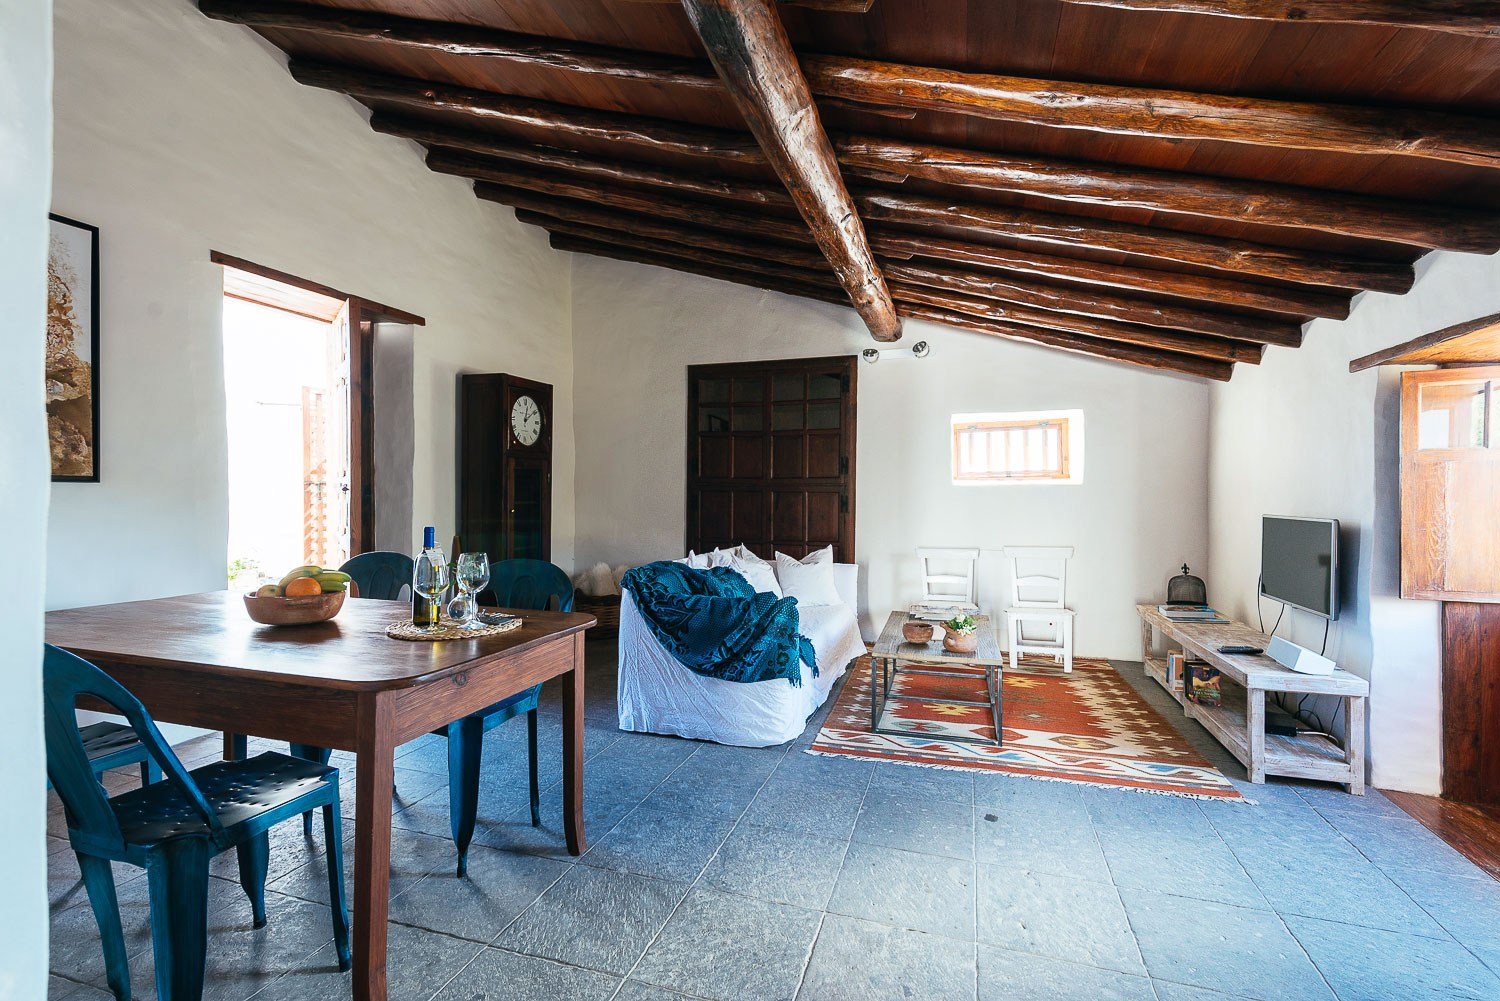 La zona del salón, completa con un sofá, televisión, mesa de comedor y elementos tradicionales canarios del Siglo XVII - La Casa del Alpendre.